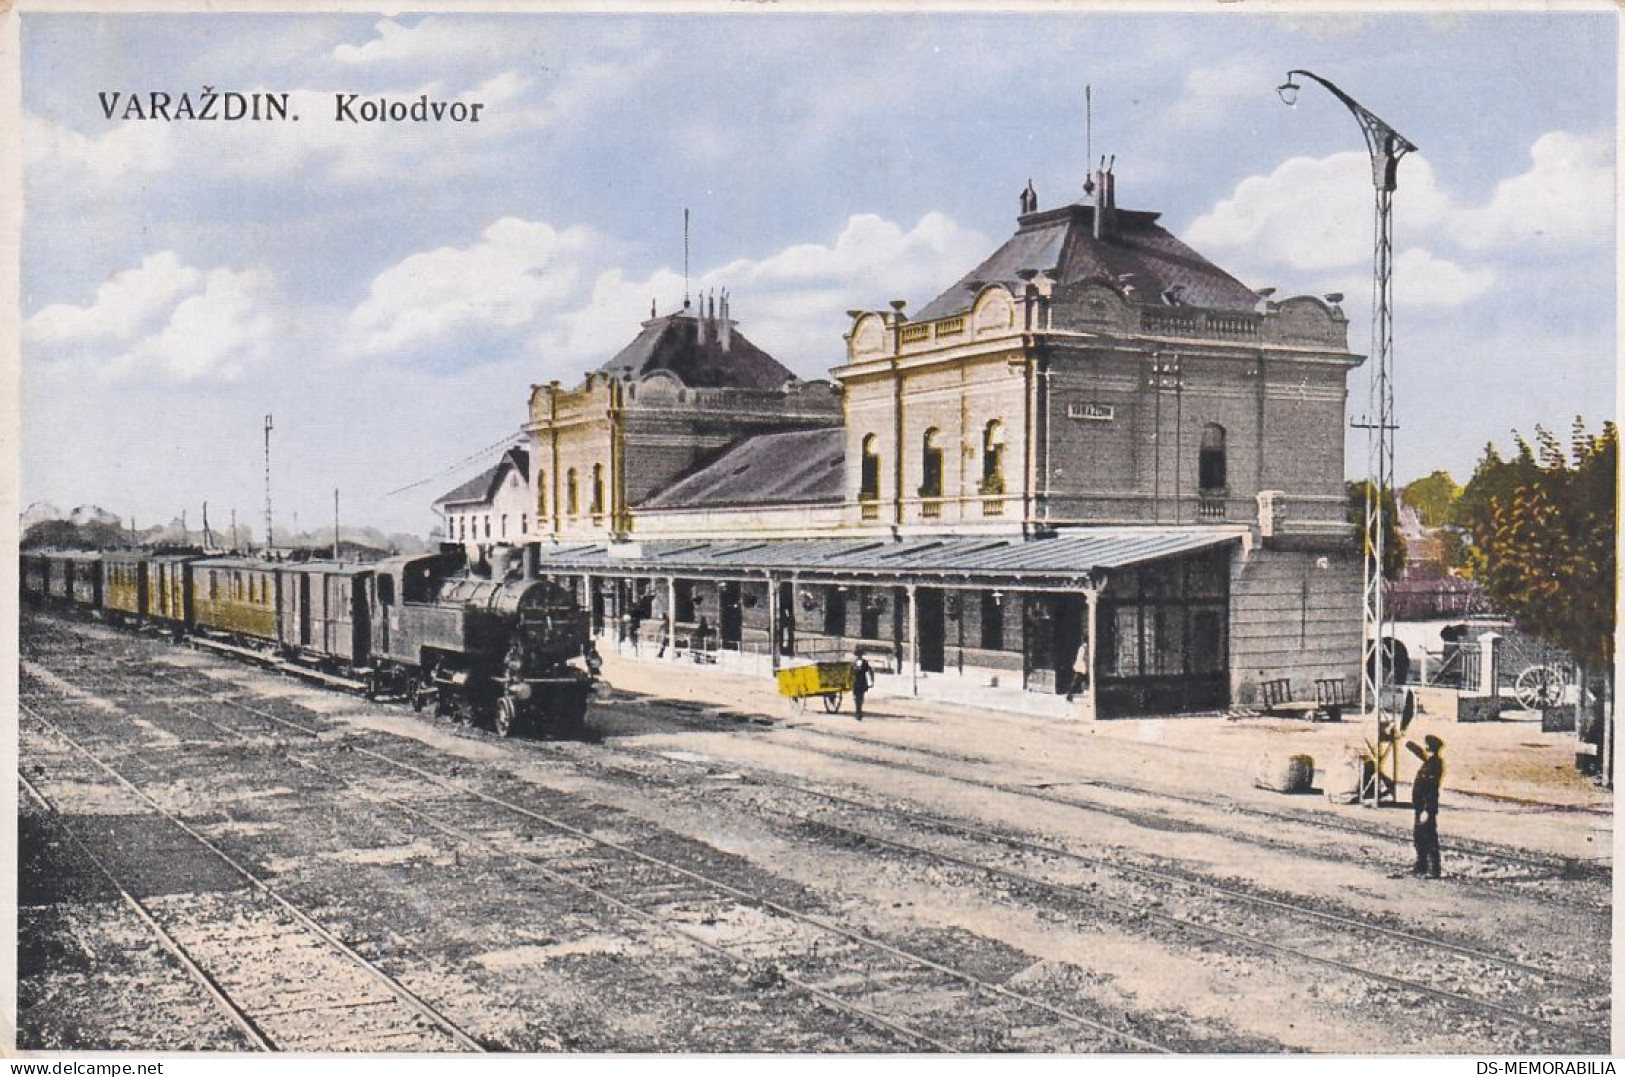 573_001 Varaždin - Railway Train Station , Bahnhof 1929.jpg